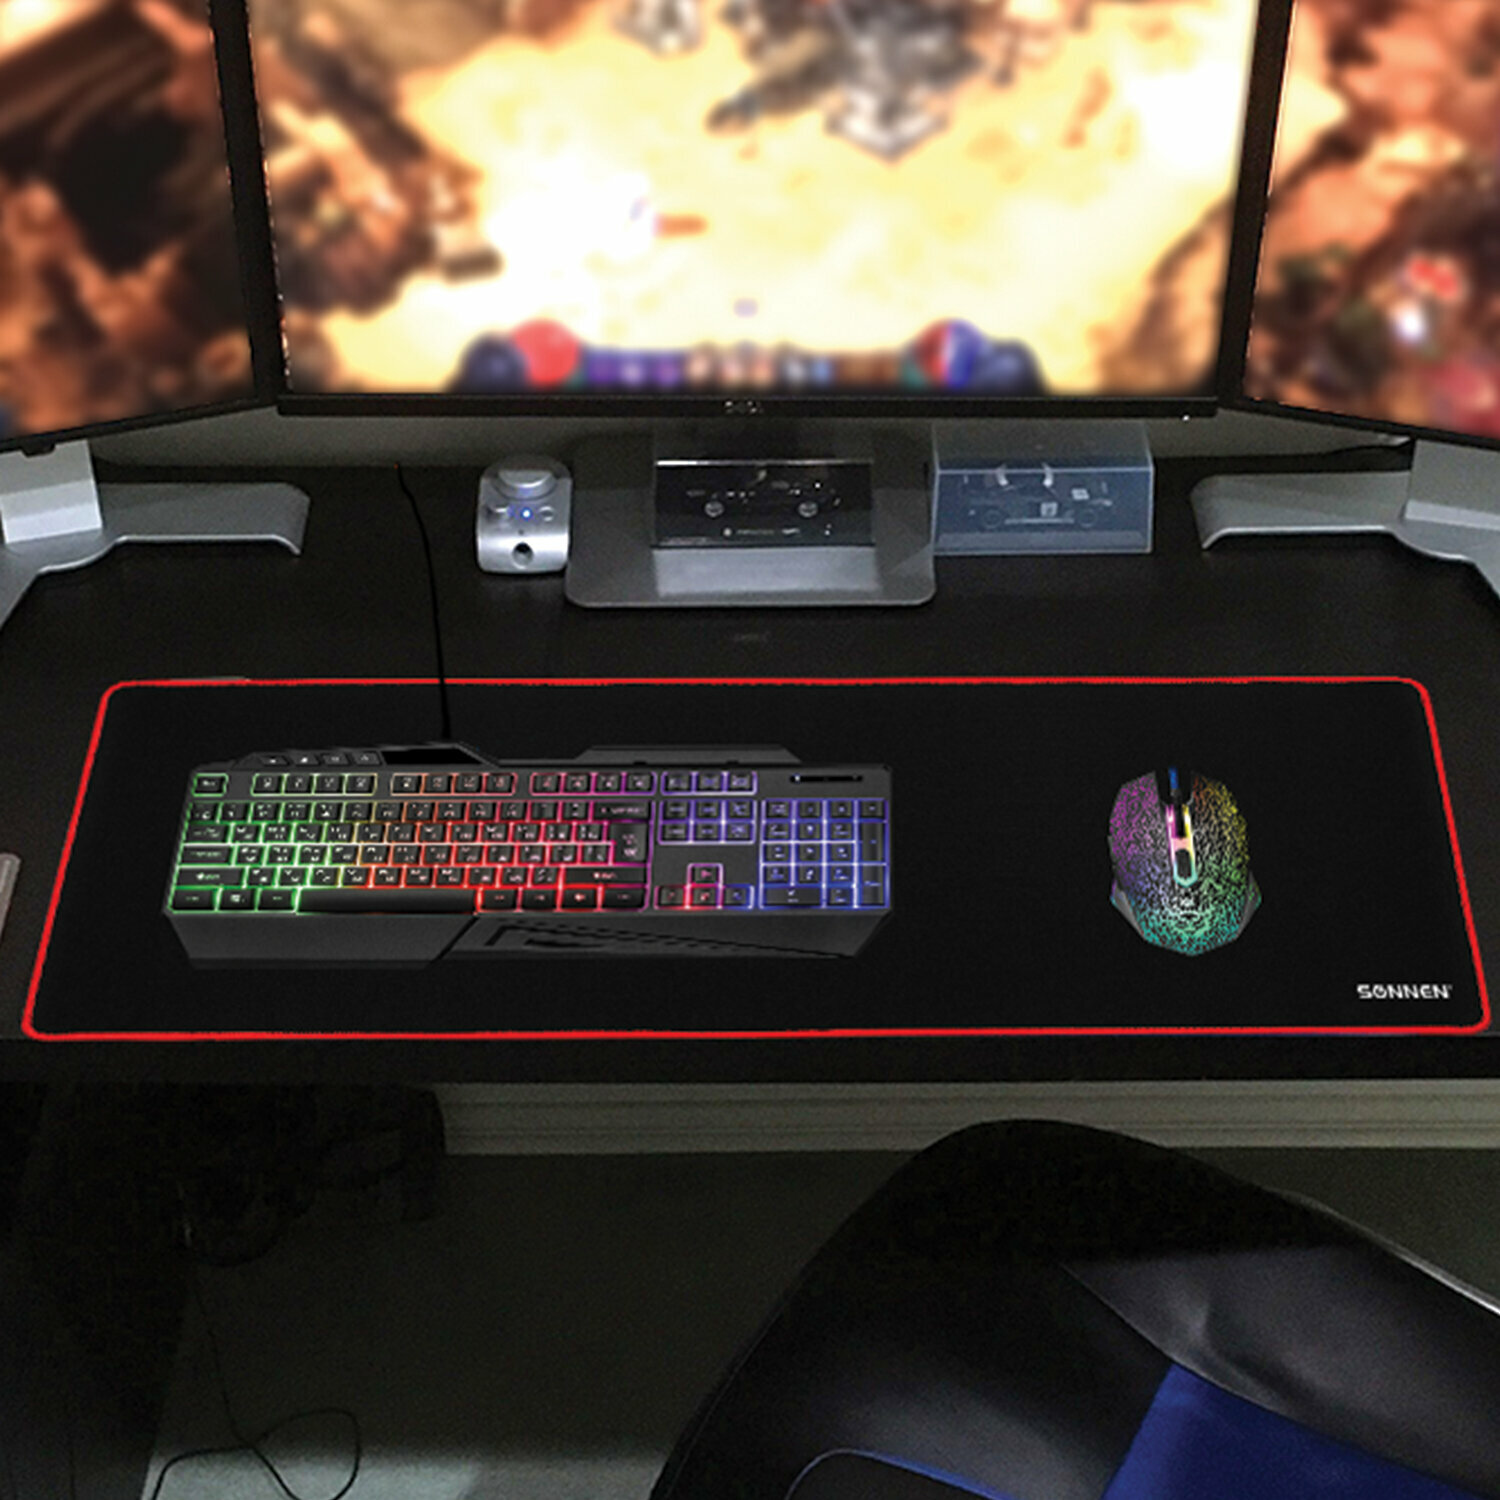 Коврик компьютерный игровой для мыши / мышки / компьютера / клавиатуры большой Black Titan Xl 800x300x3мм черный Sonnen